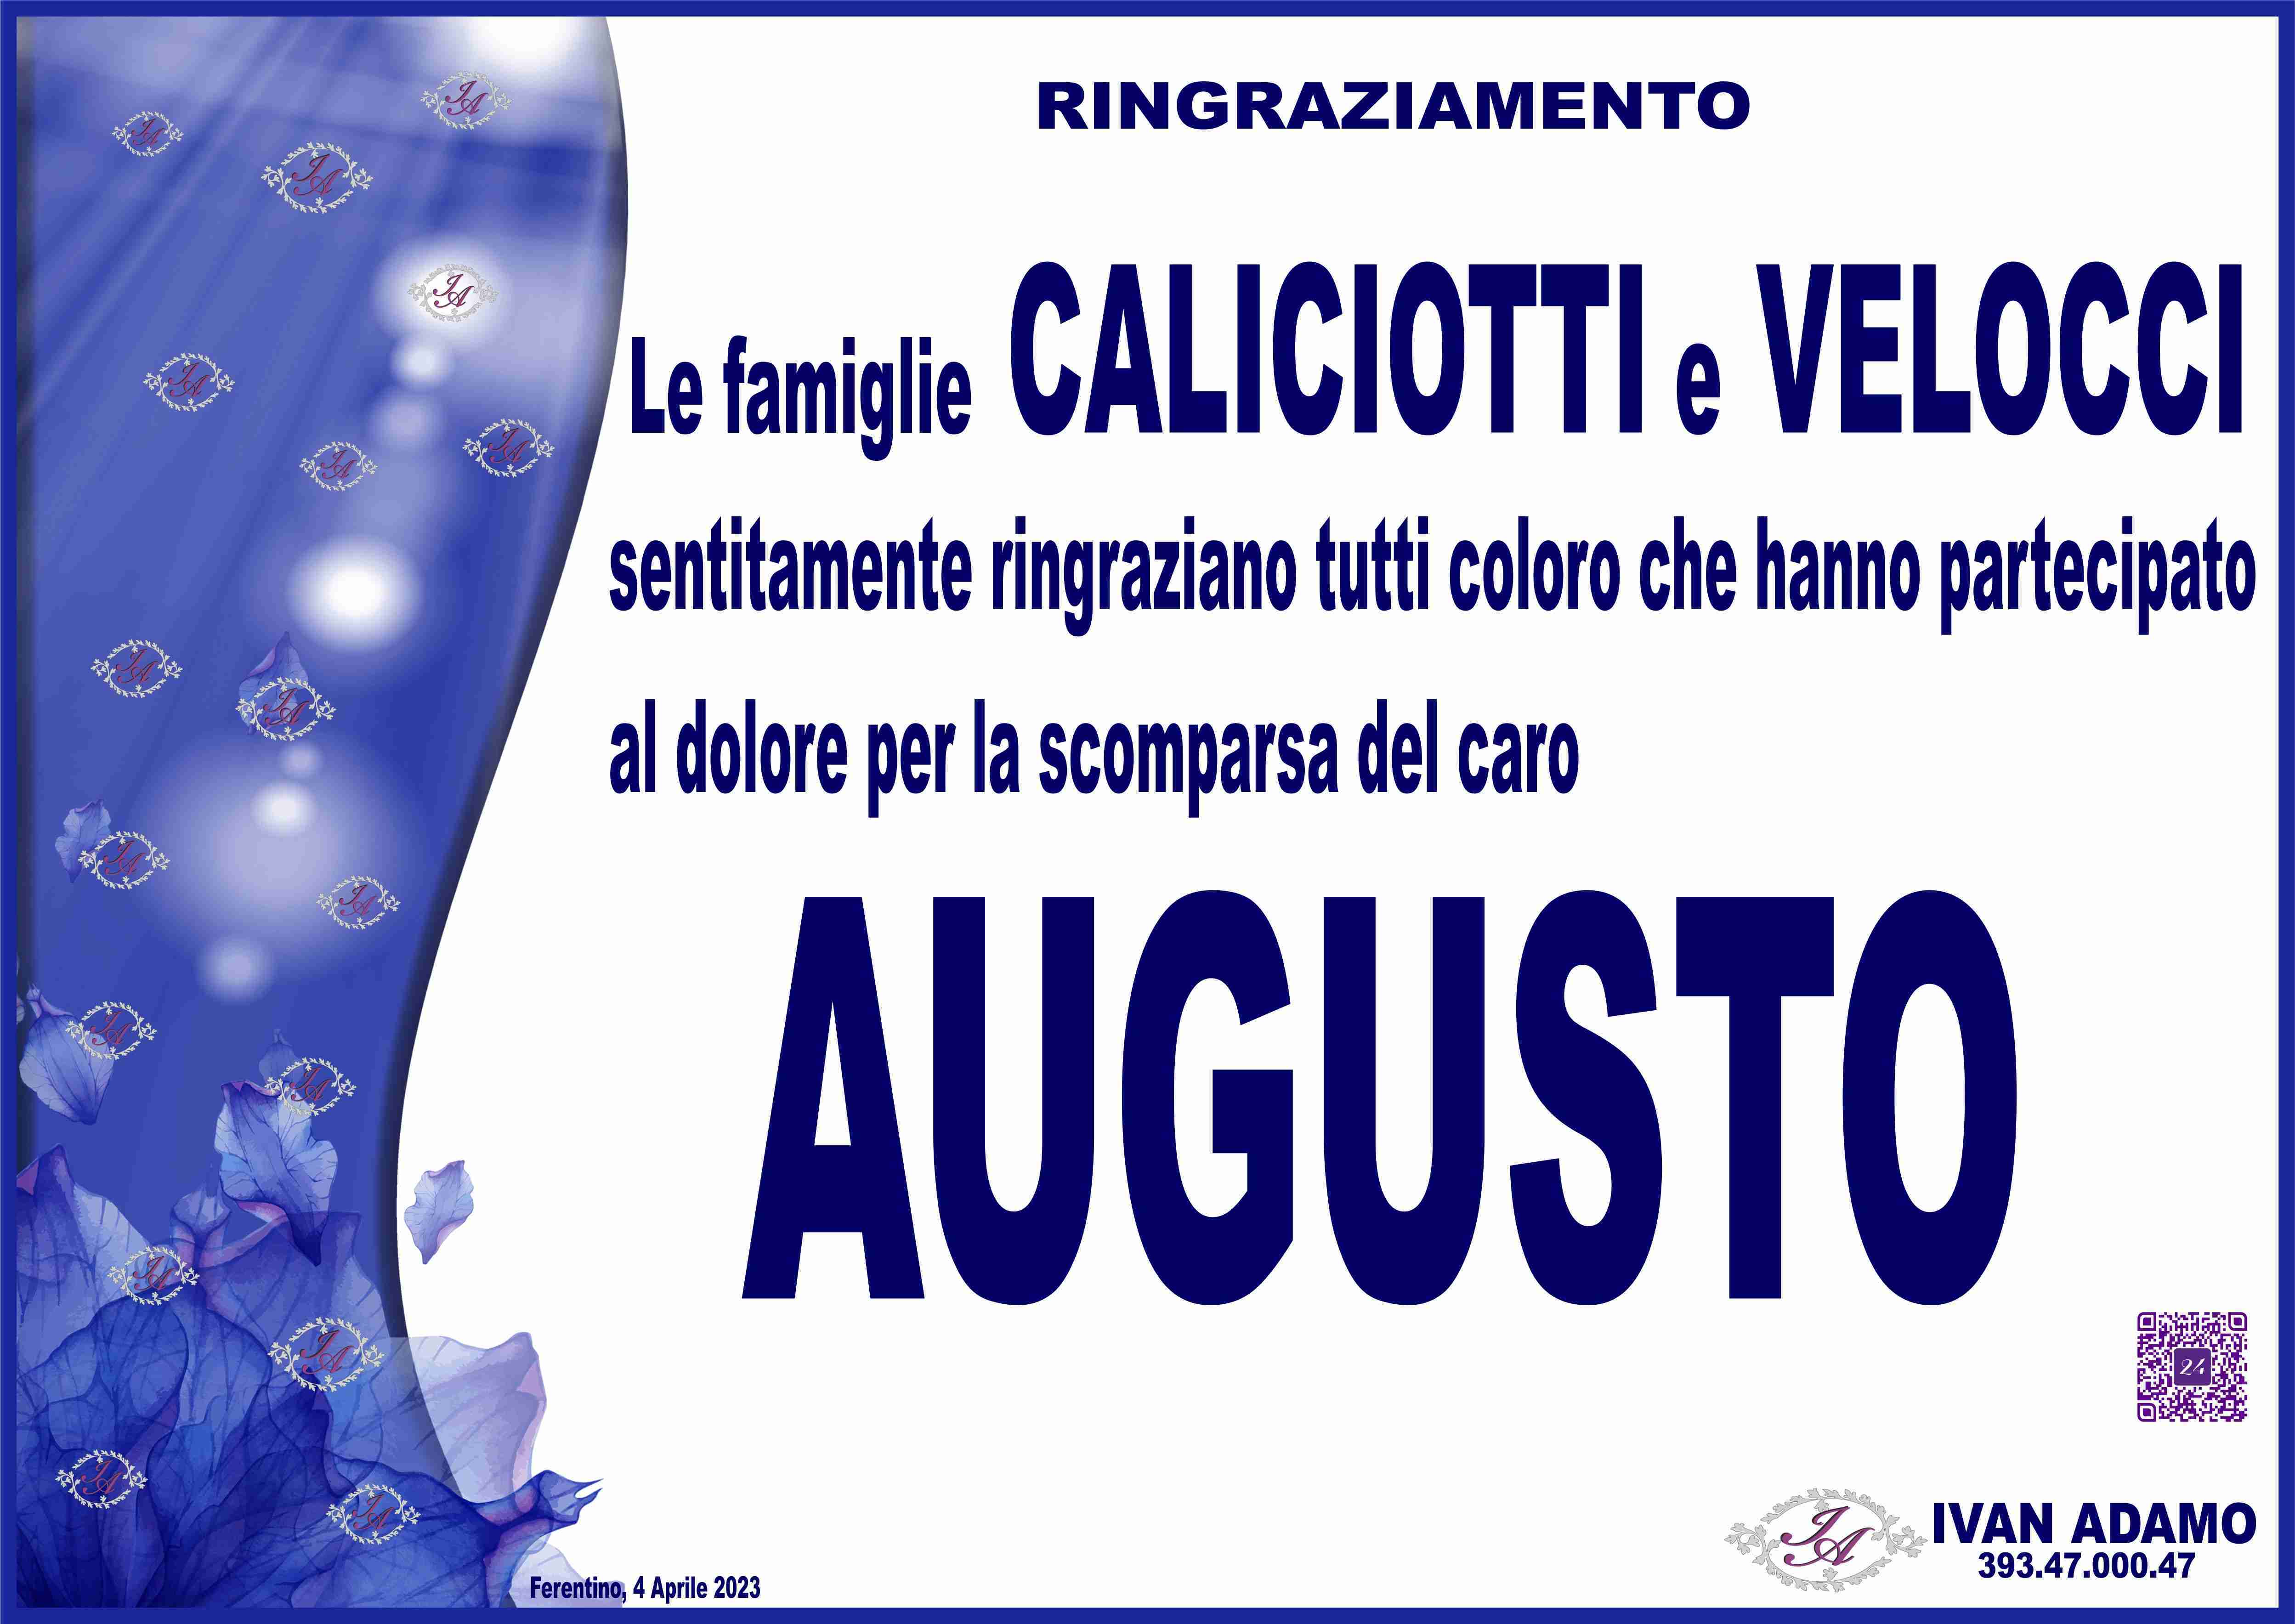 Augusto Caliciotti